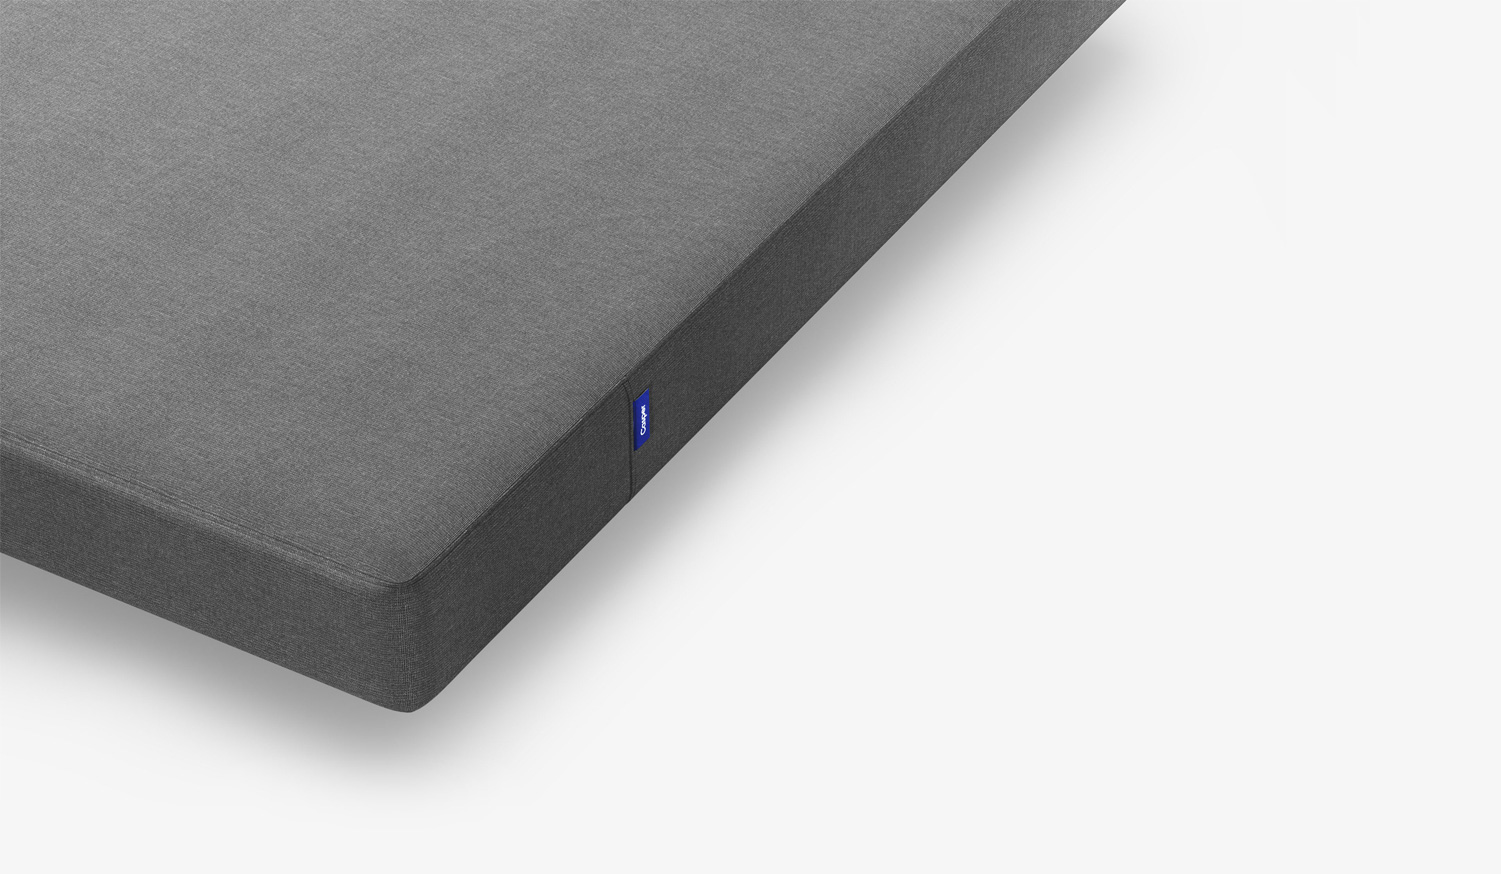 casper essential mattress review